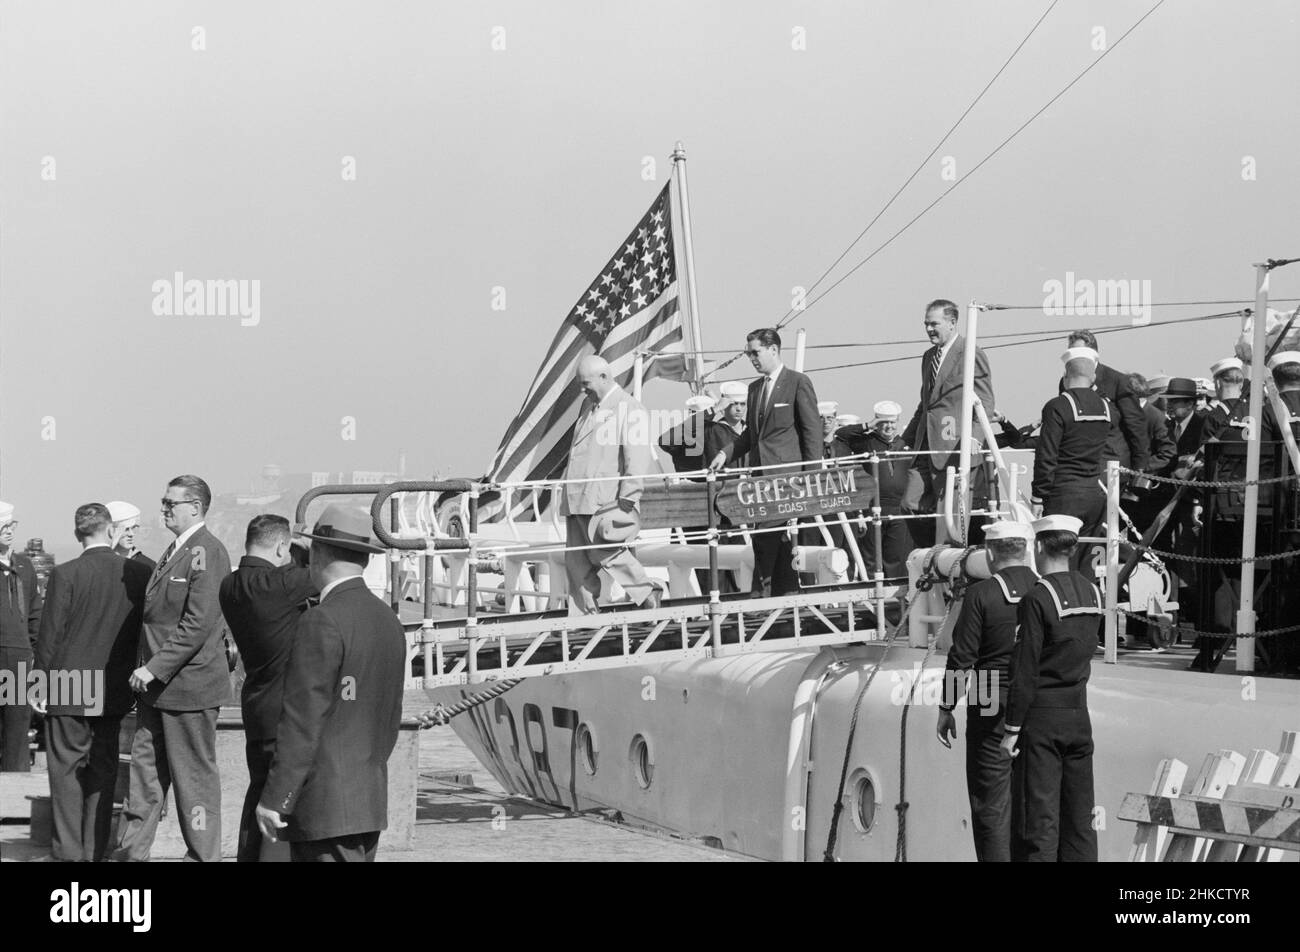 Der sowjetische Führer Nikita Chruschtschow und andere verlassen das Patrouillenboot Gresham der US-Küstenwache, nachdem sie die Bucht von San Francisco während ihres Besuchs in den USA, San Francisco, Kalifornien, USA, Thomas J. O'Halloran, U.S. News & World Report Magazine Photograph Collection, 23. September 1959 Stockfoto